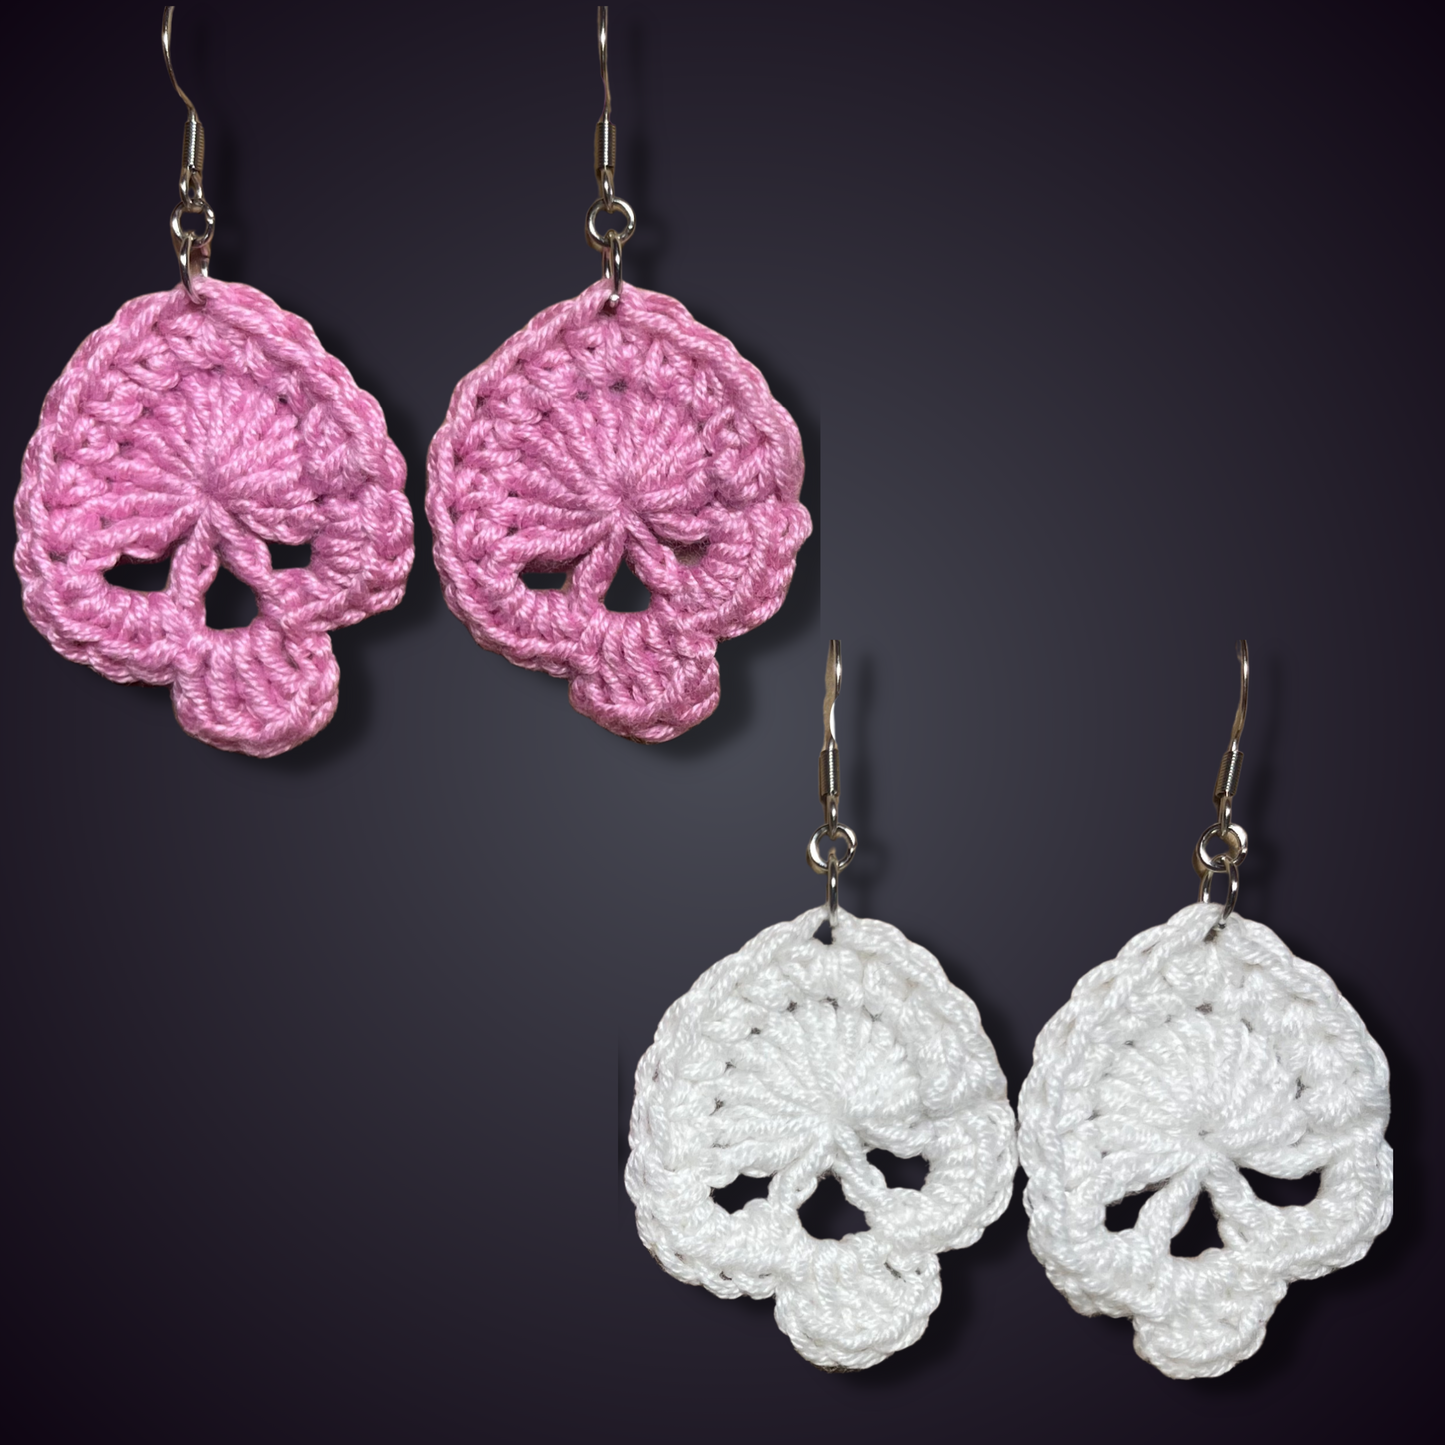 Crochet Skull Earrings